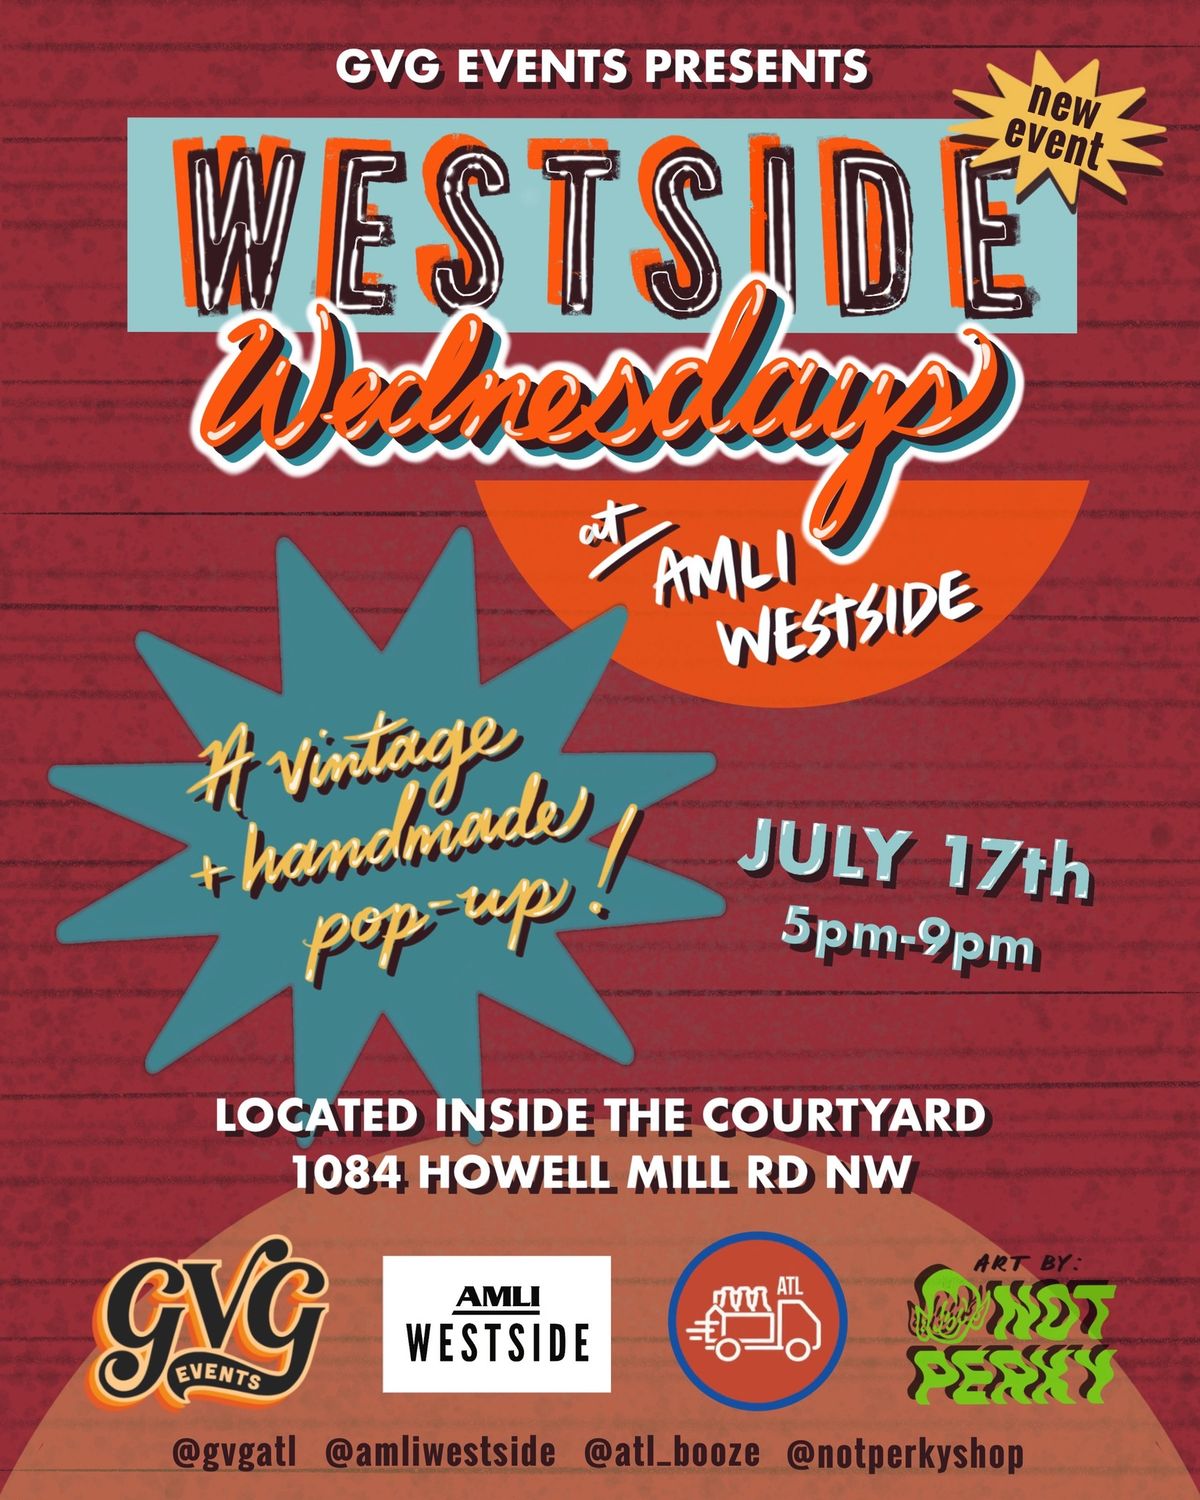 Westside Wednesdays at AMLI Westside